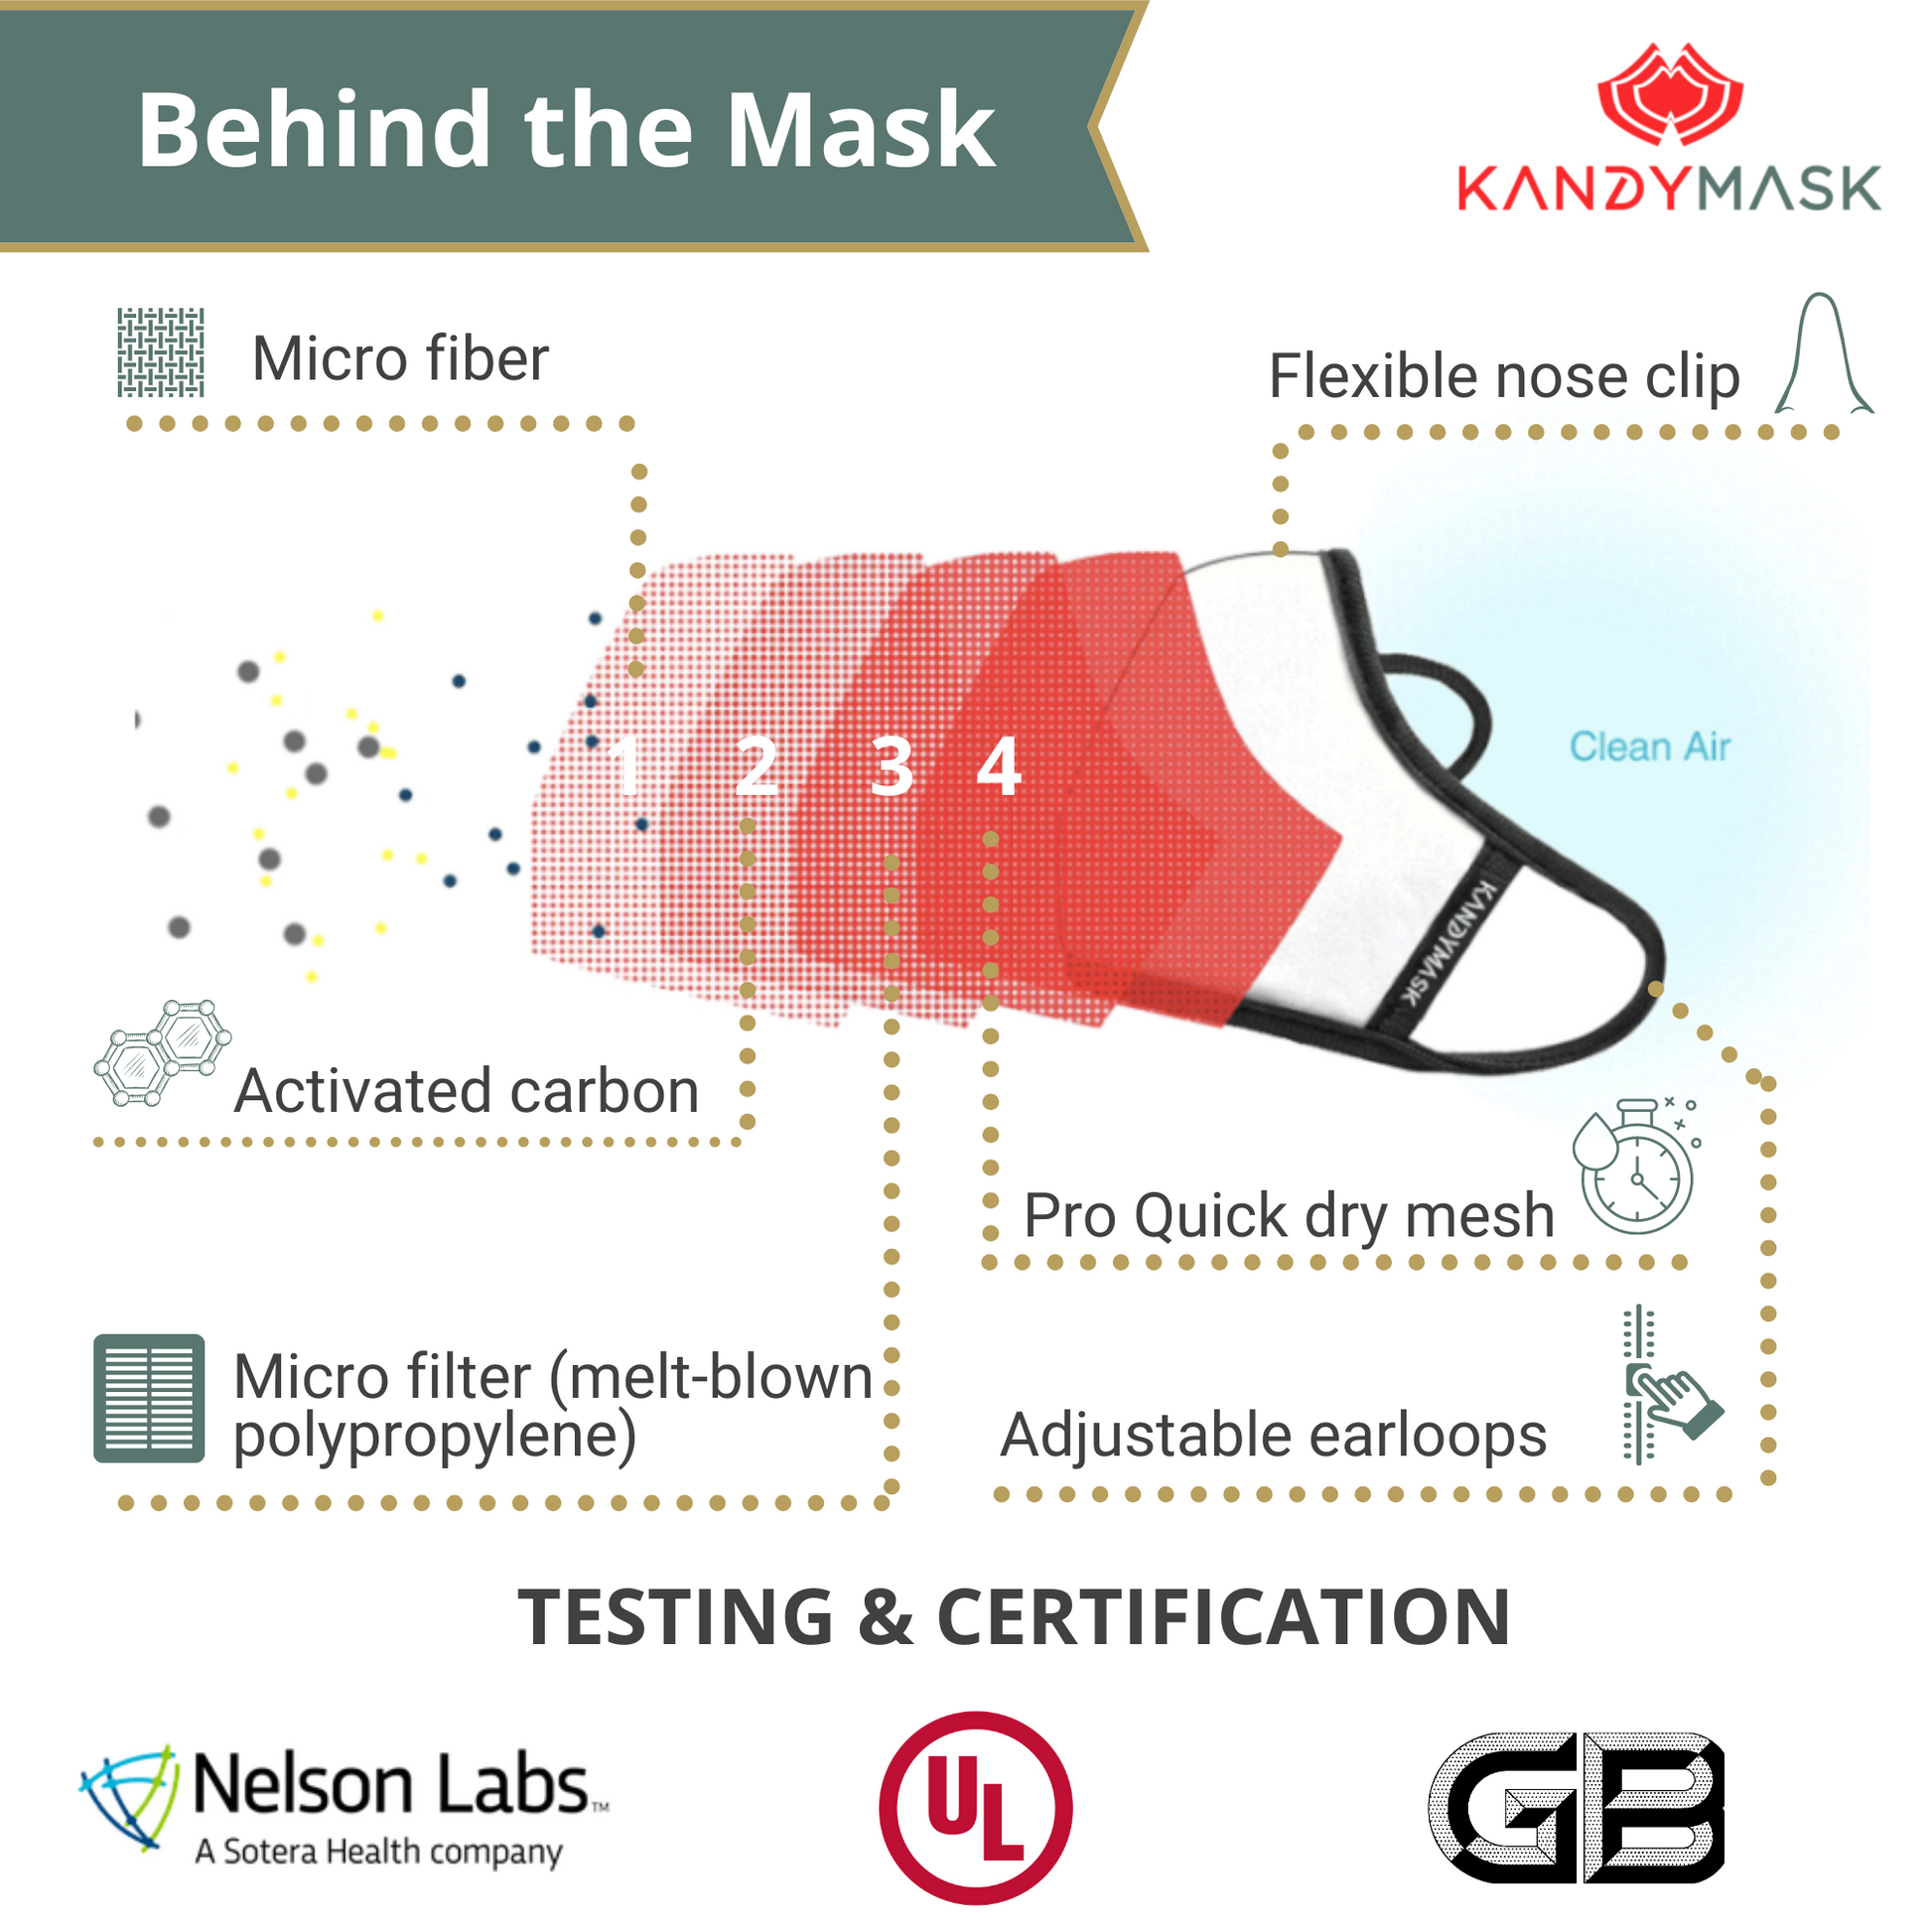 Behind the mask - KandyMask Hope 7.0 Protective Mask - without Valves - www.kandymask.com